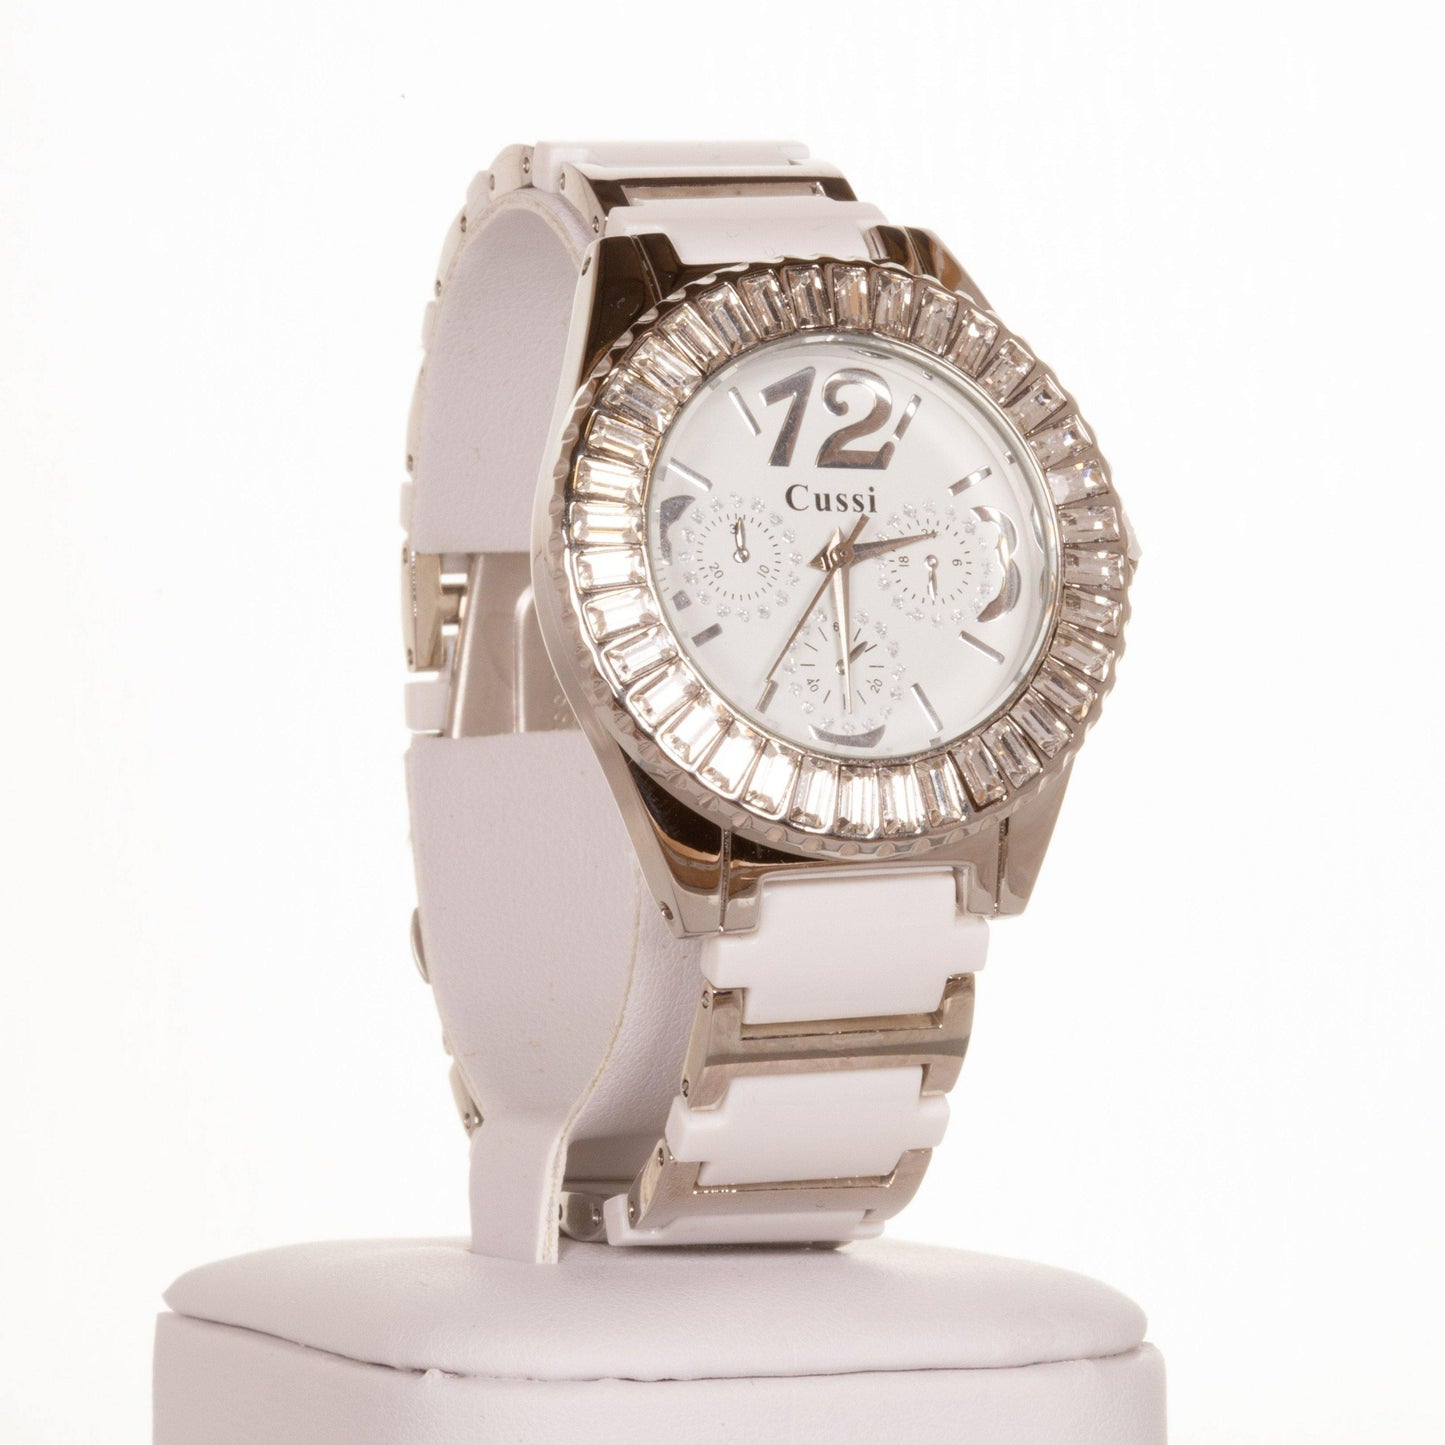 CUSSI dámske hodinky v striebornej farbe s bielym remienkom a s kryštálmi kremeňa okolo ciferníka - KlenotTV.sk